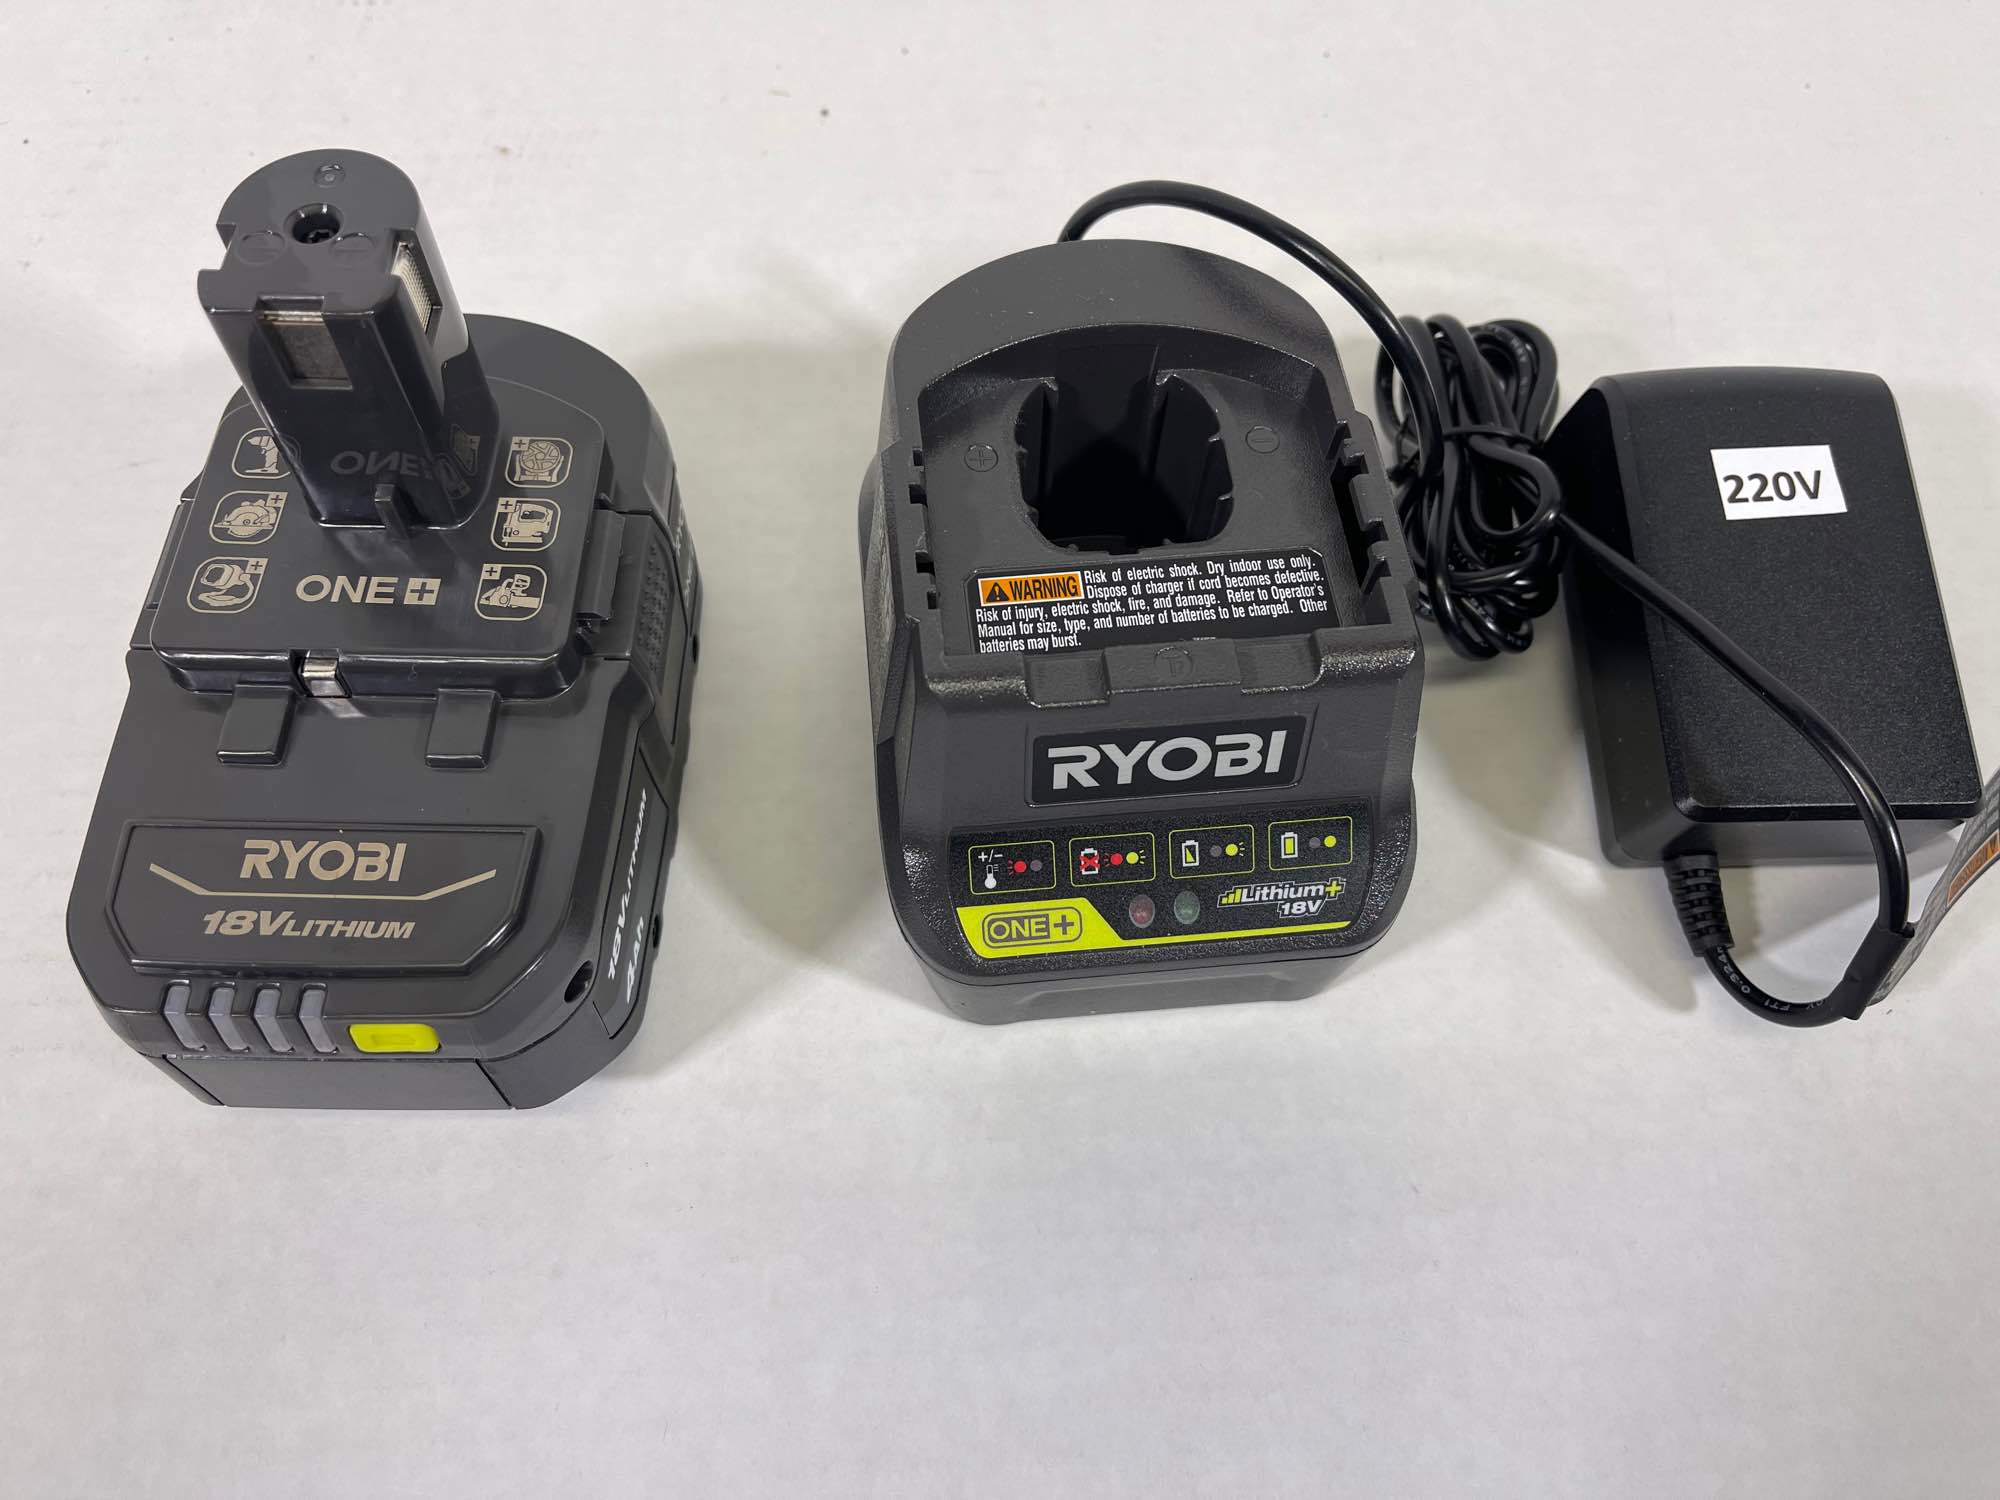 Who Sells Ryobi Batteries